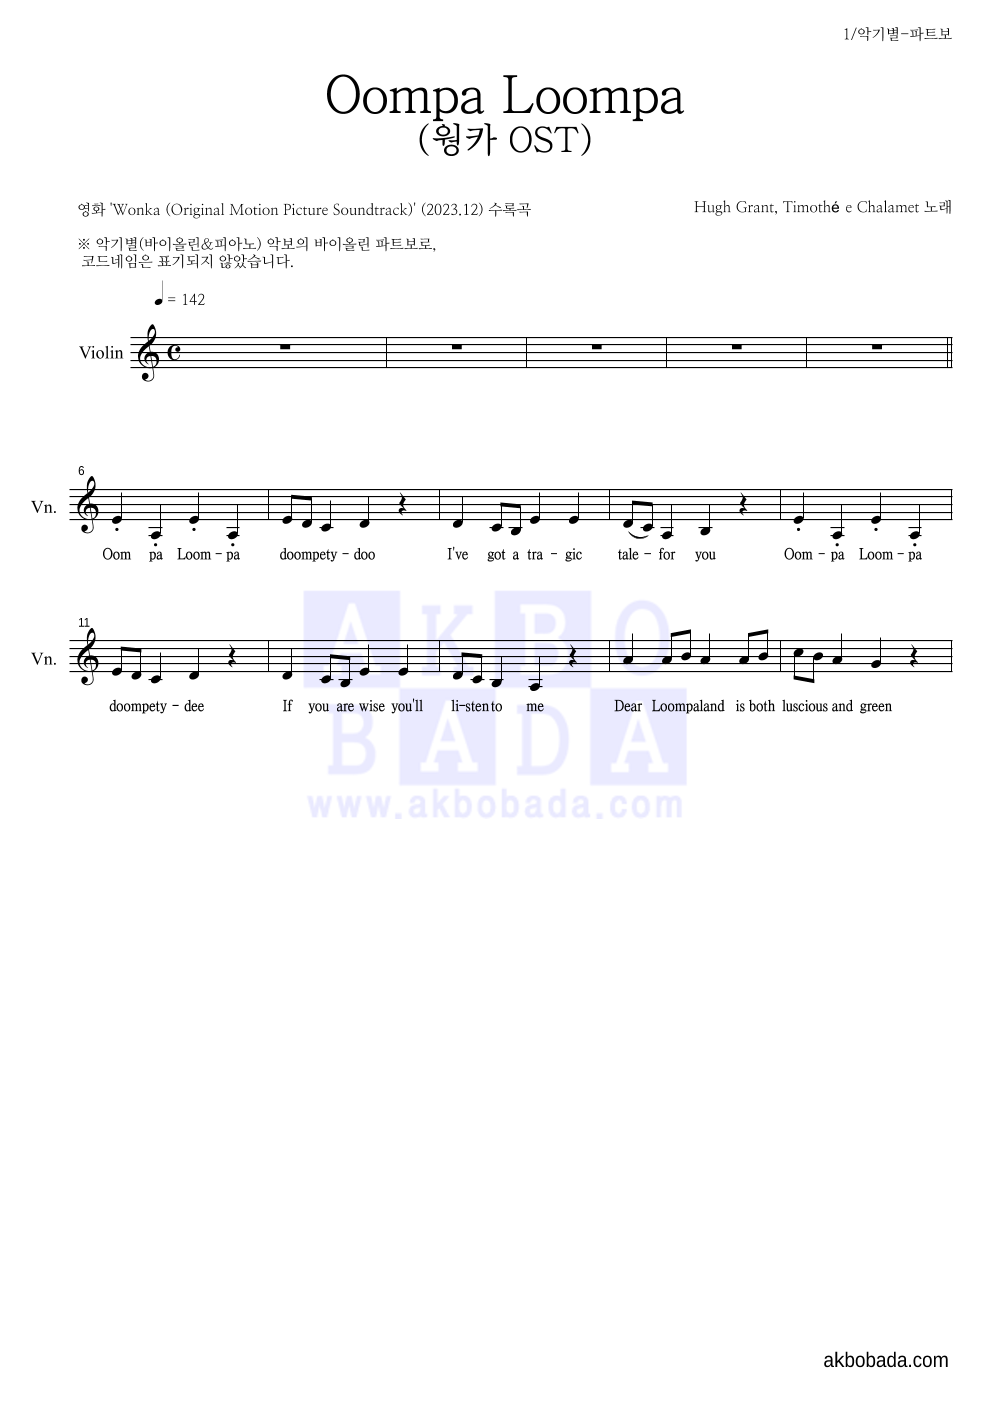 웡카 OST - Oompa Loompa 바이올린 파트보 악보 